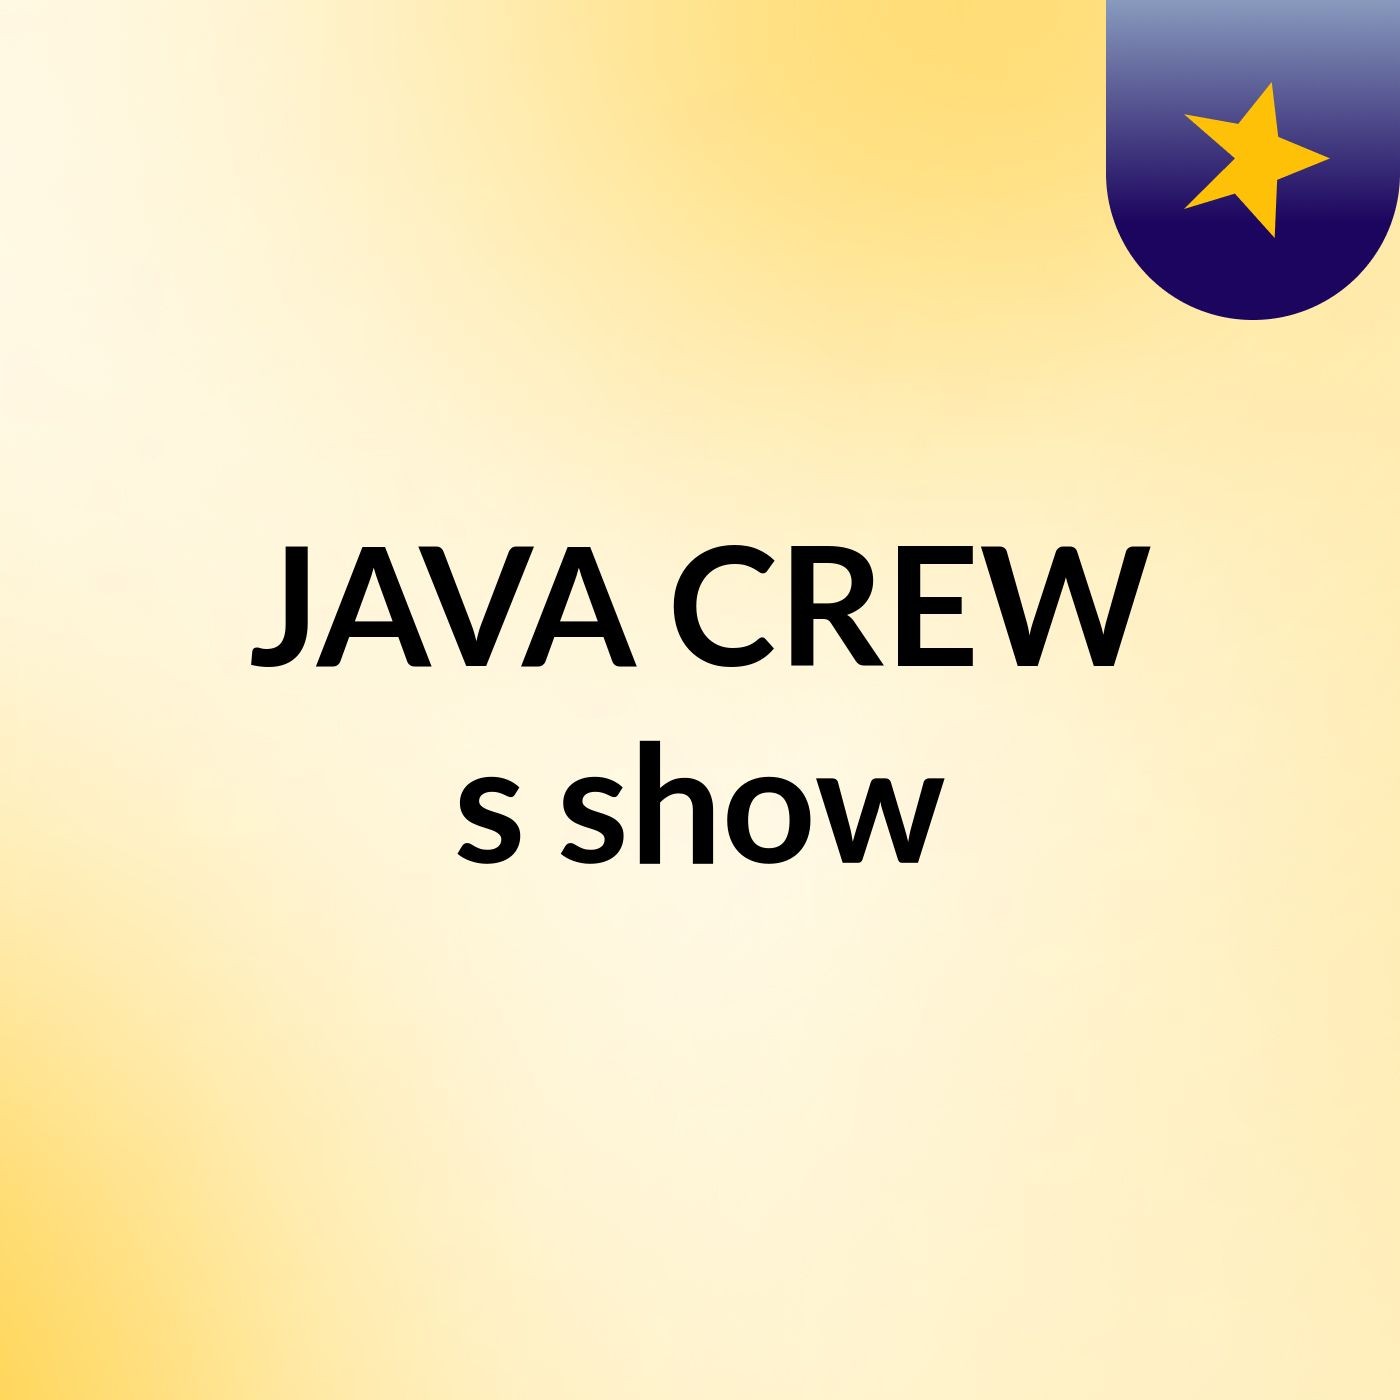 JAVA CREW's show